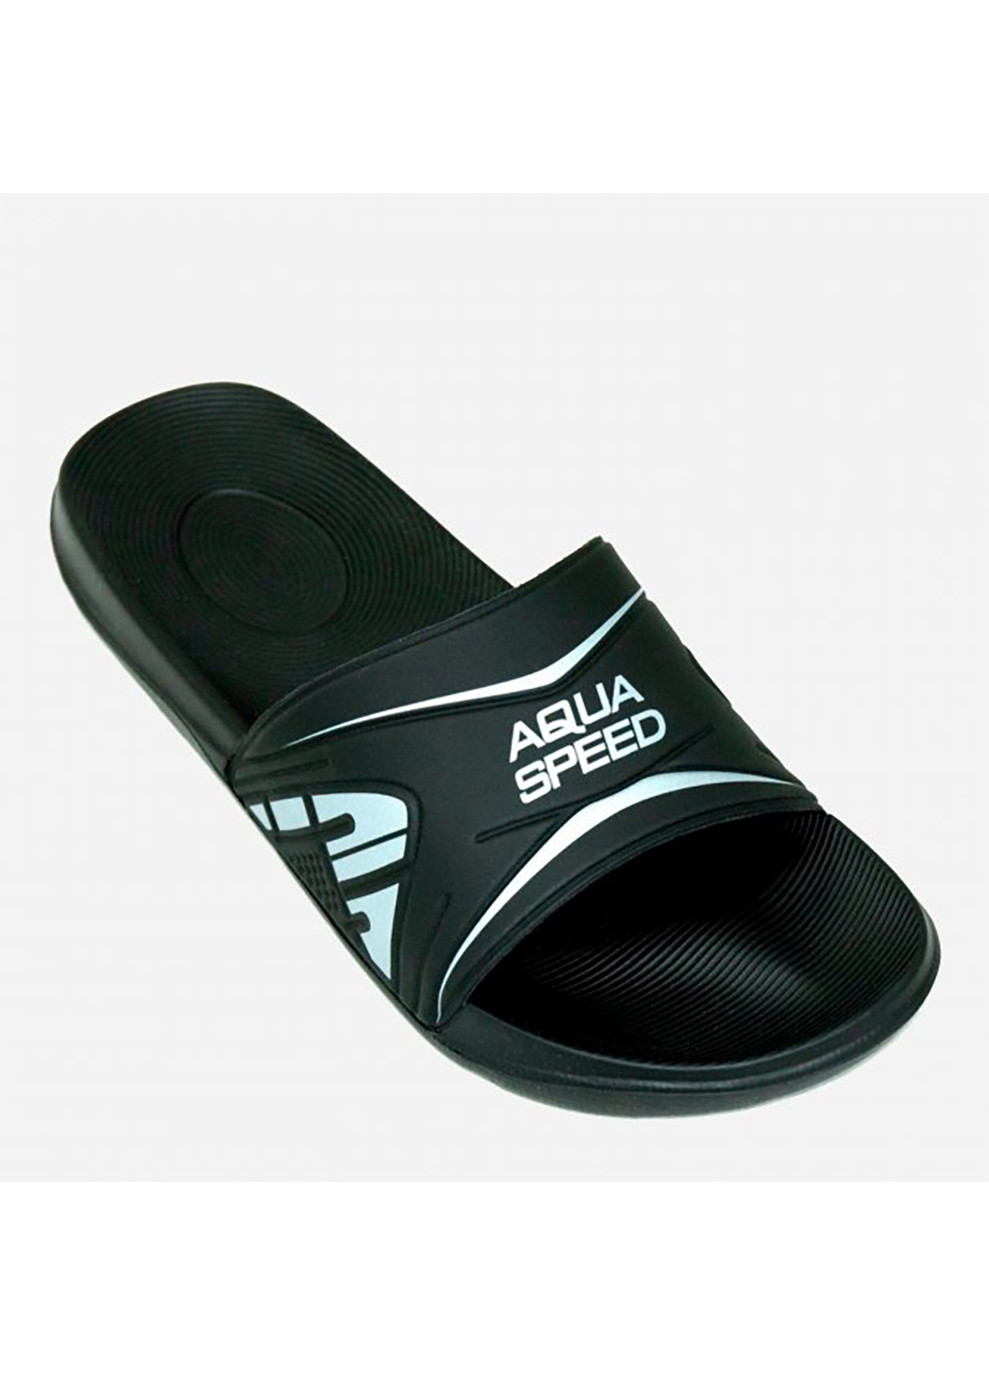 Черные спортивные шлепанцы dakota 6806 черный, серебристый Aqua Speed